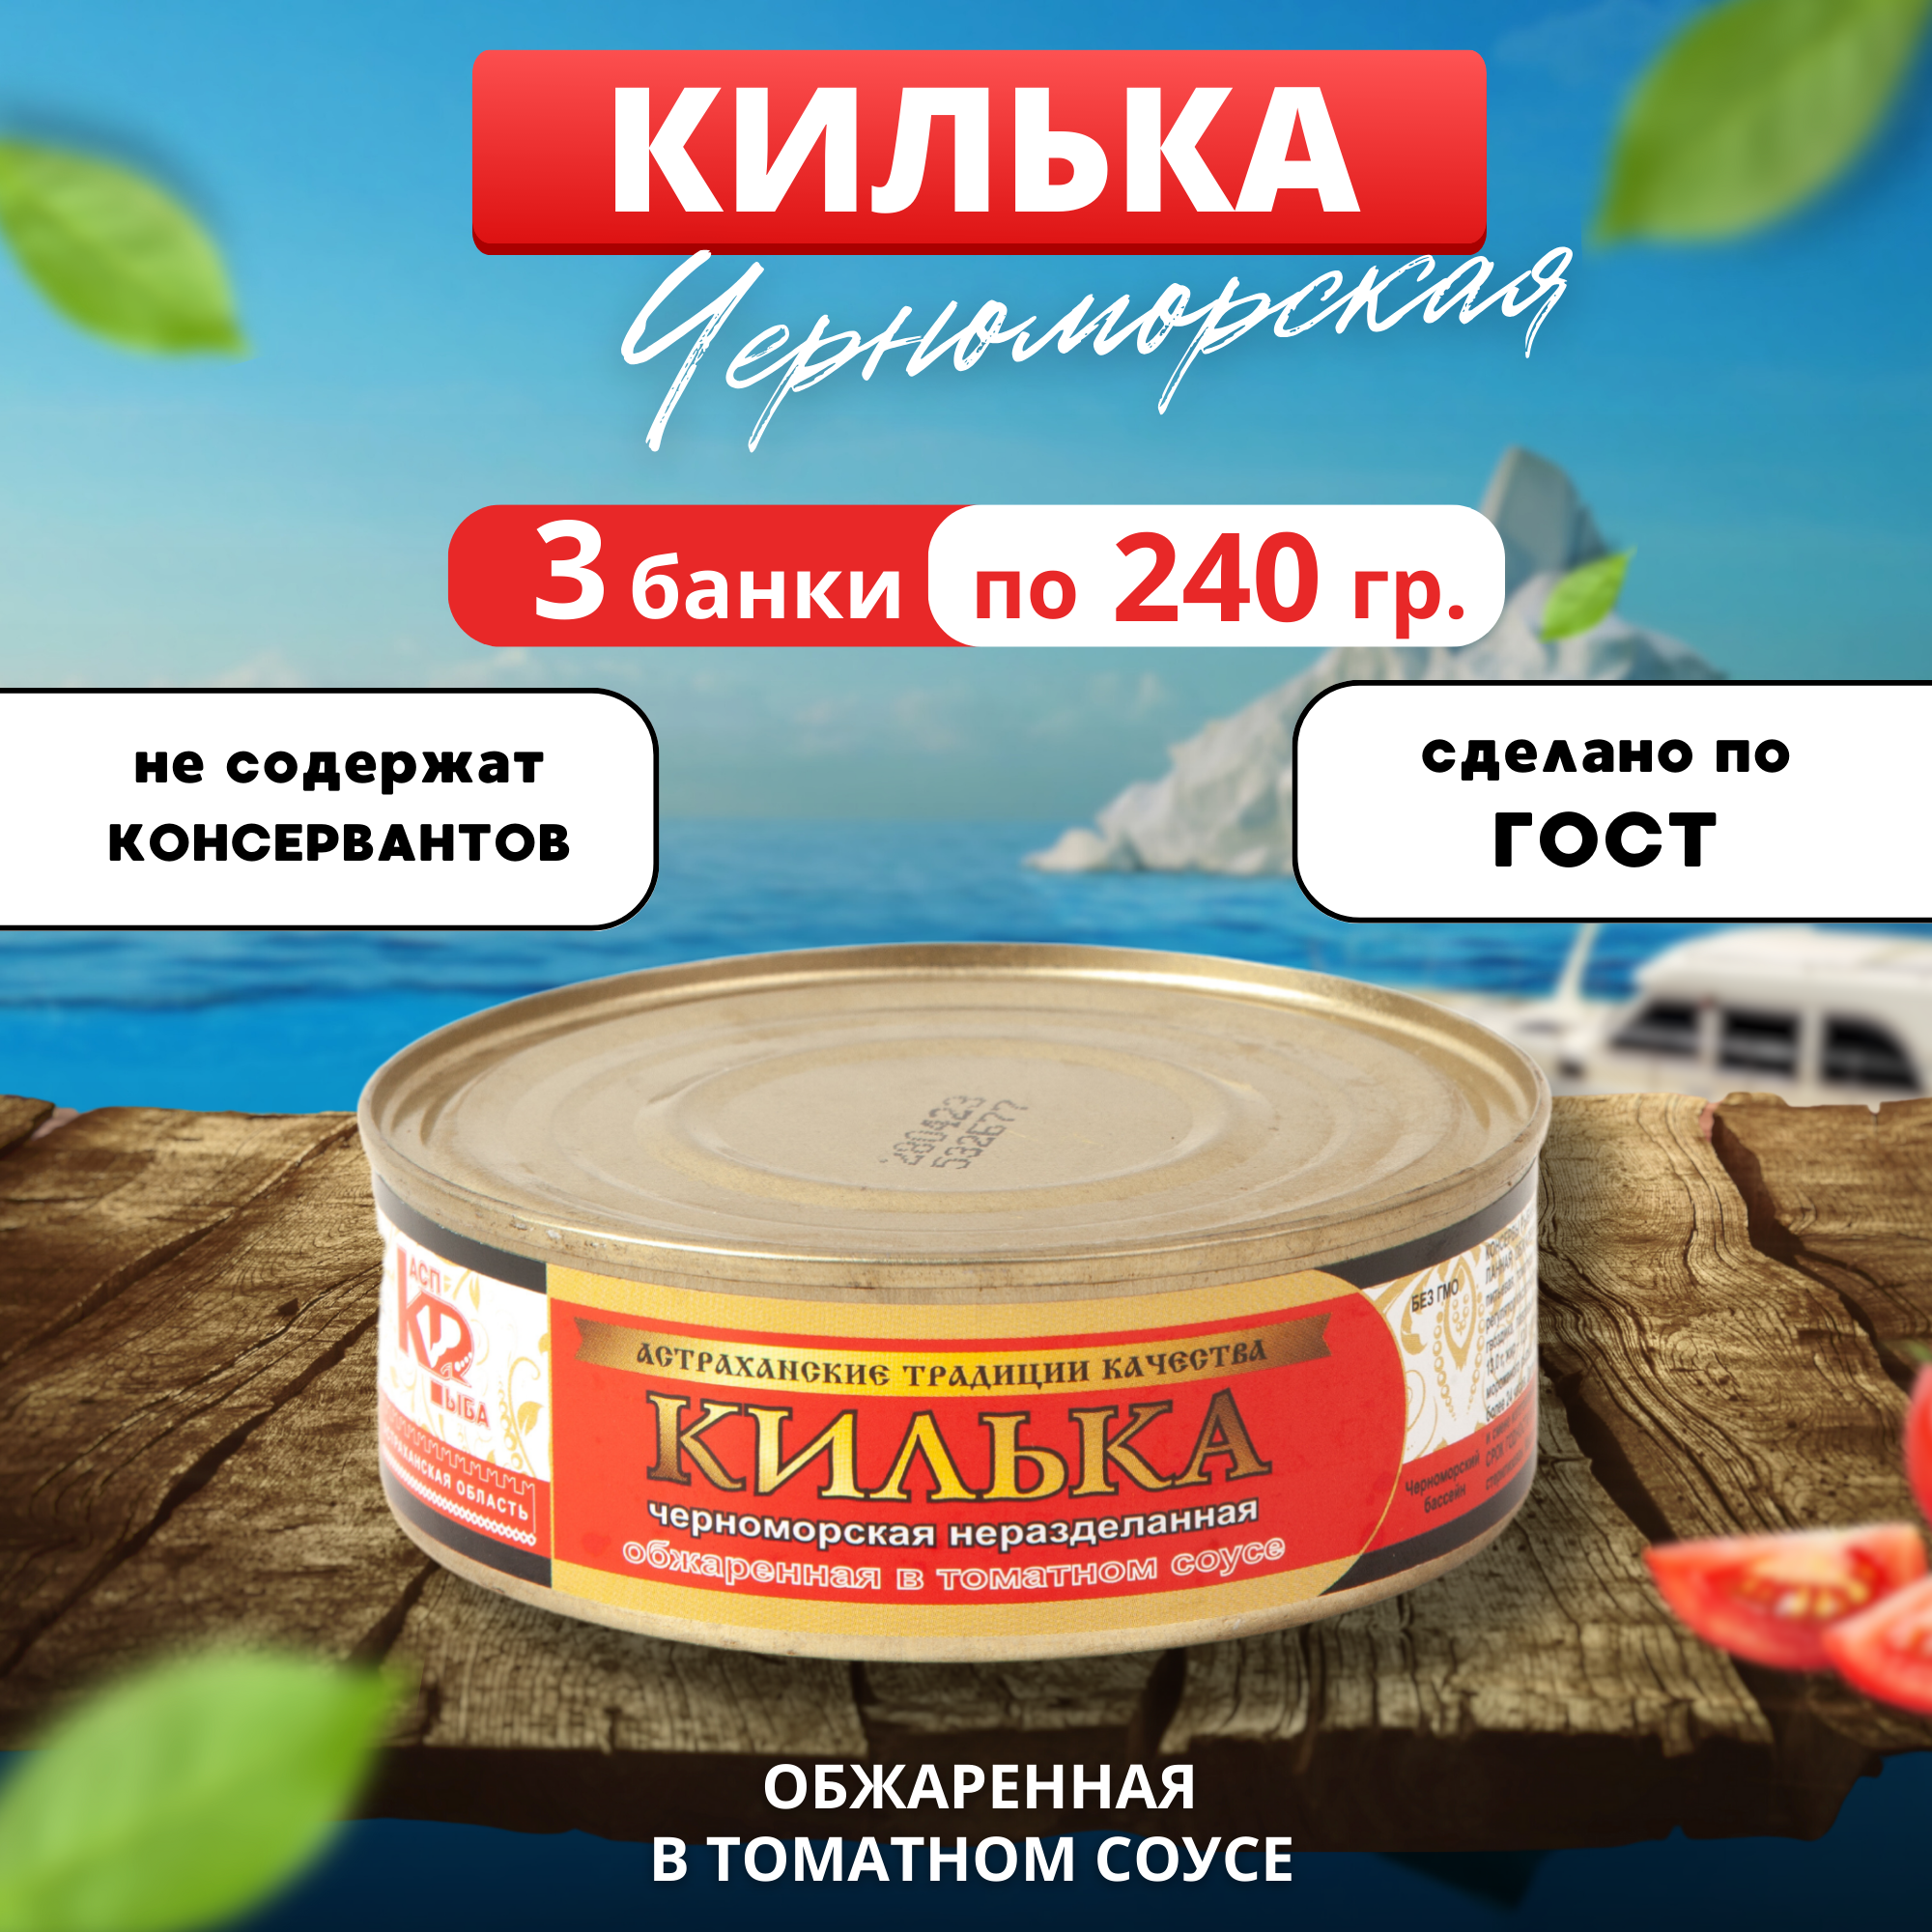 Килька черноморская обжаренная в томатном соусе 3 банки по 240 грамм